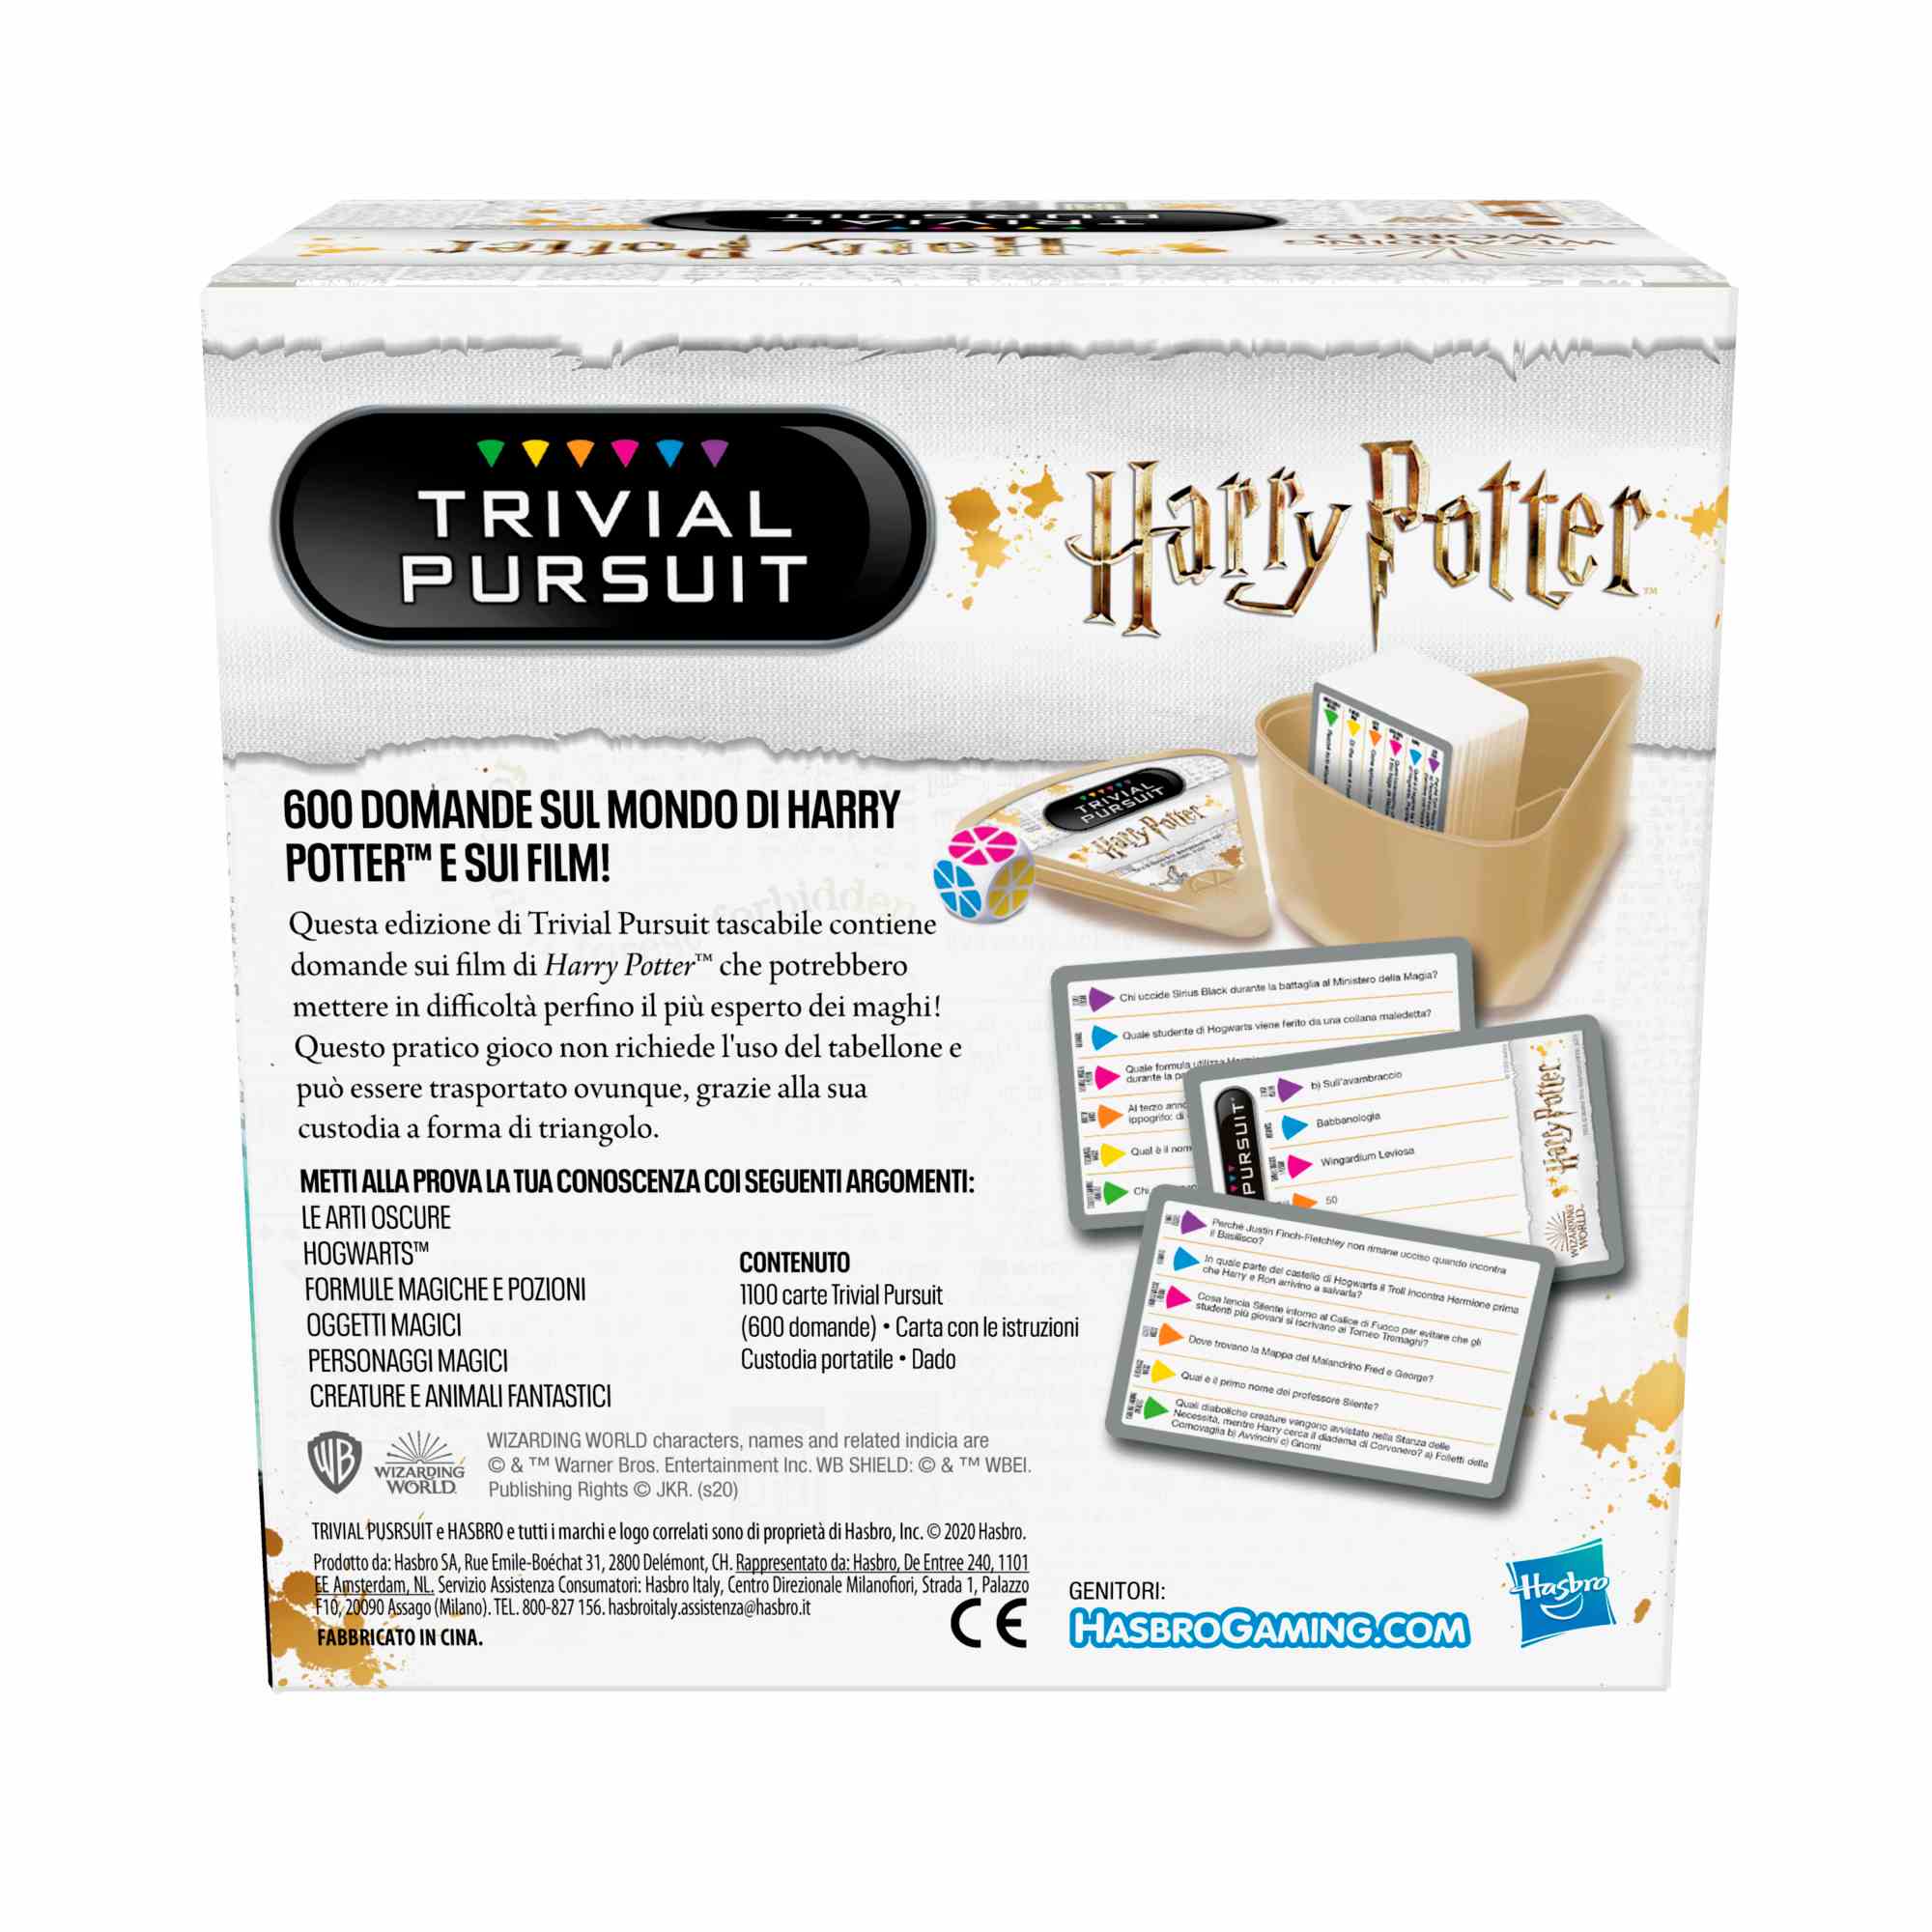 Trivial pursuit harry potter, sfida trivial in versione compatta per 2 o più giocatori - HASBRO GAMING